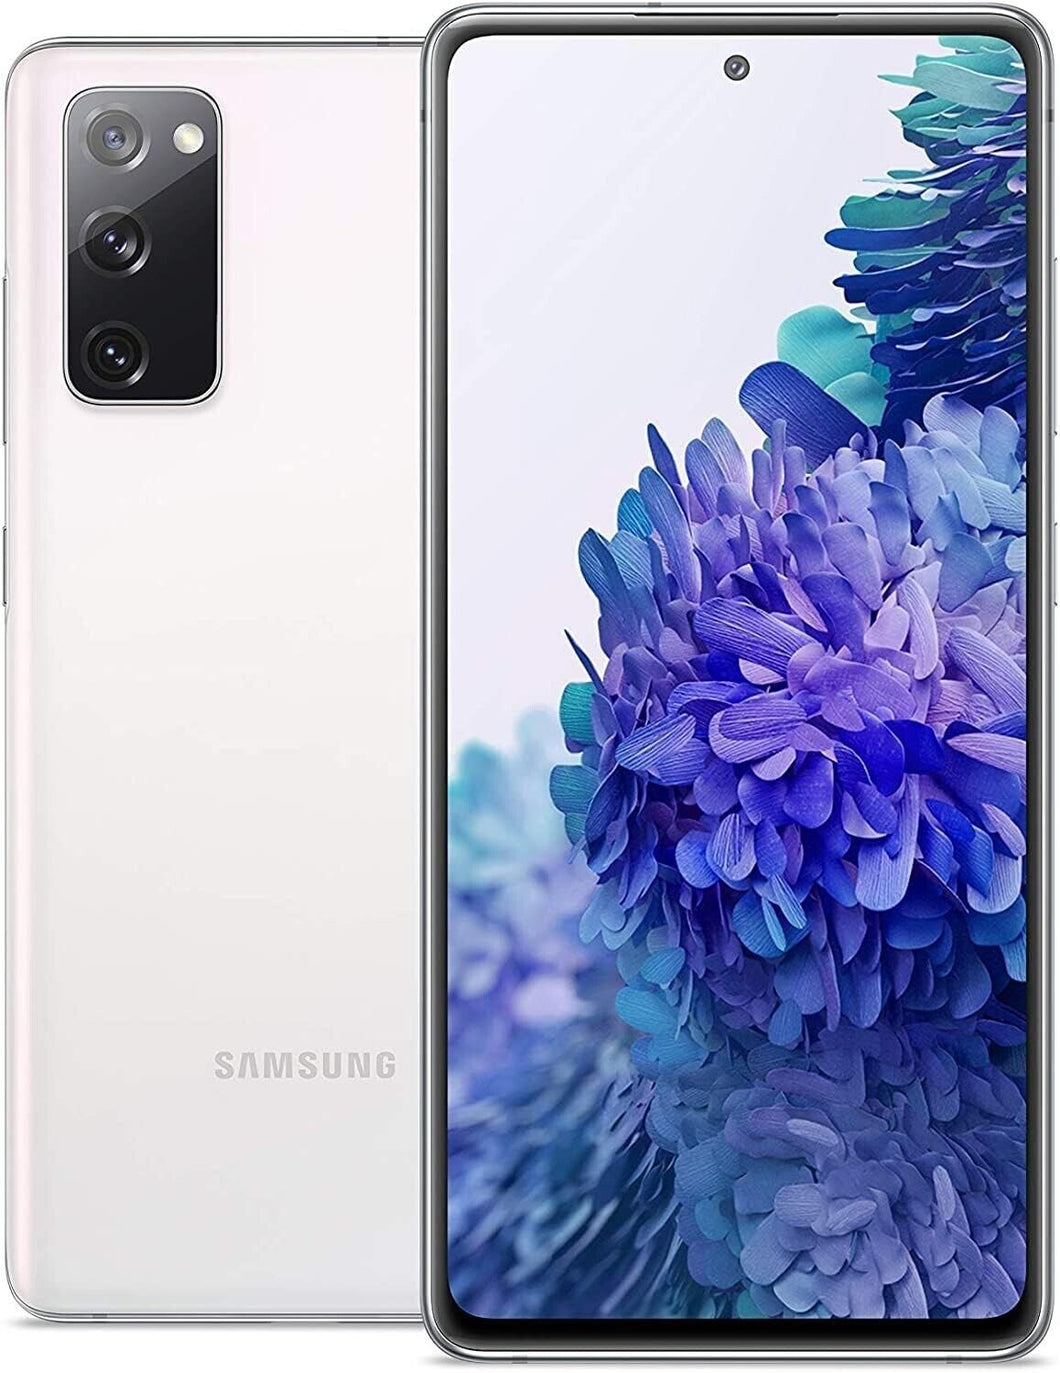 samsung Galaxy S20 FE 5G Dual Sim 128GB white unlocked